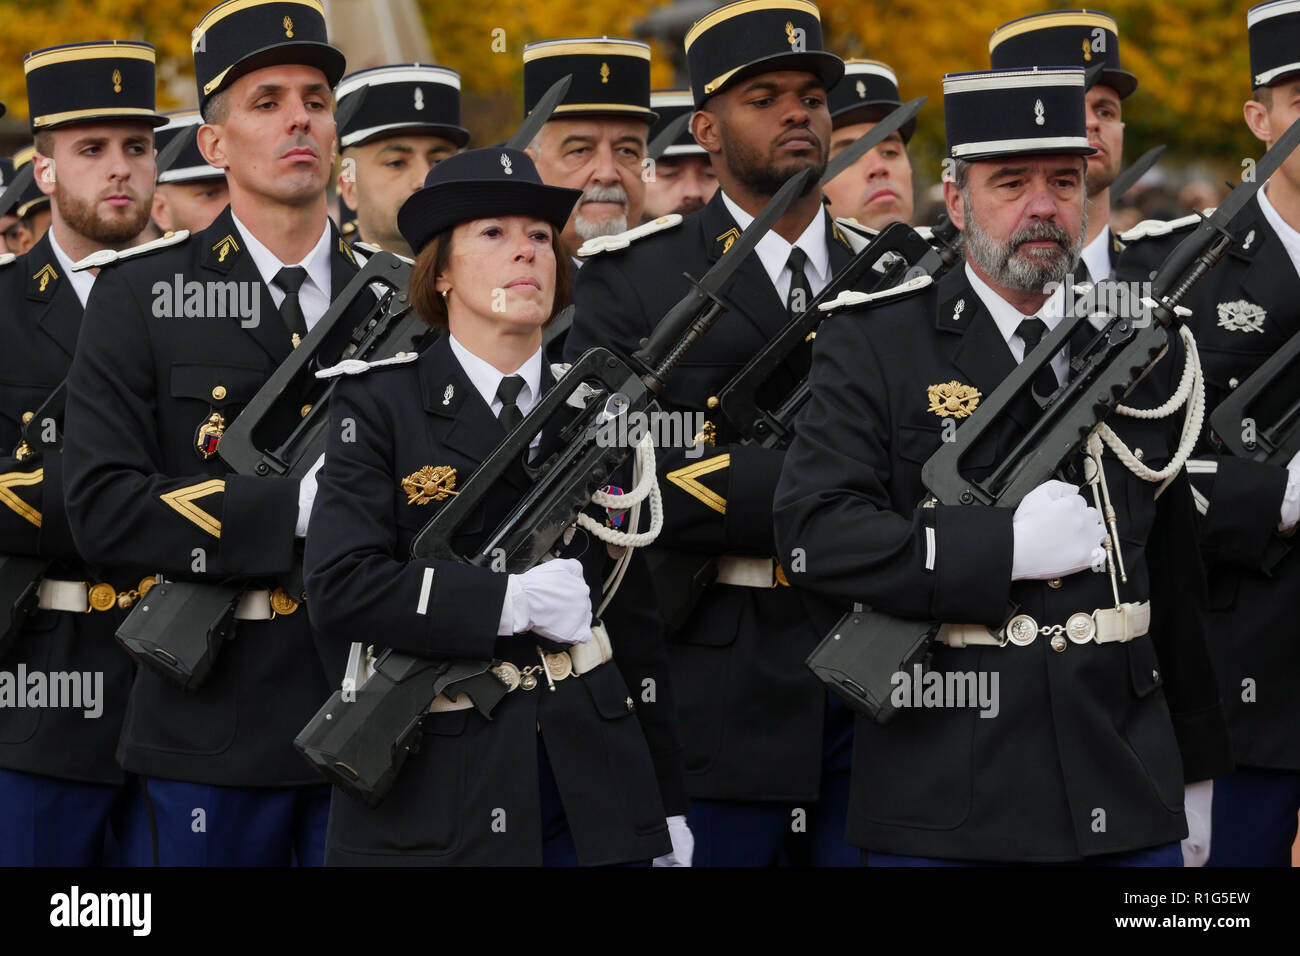 A National gendarmerie detachment attends Commemoration ceremonies of ...